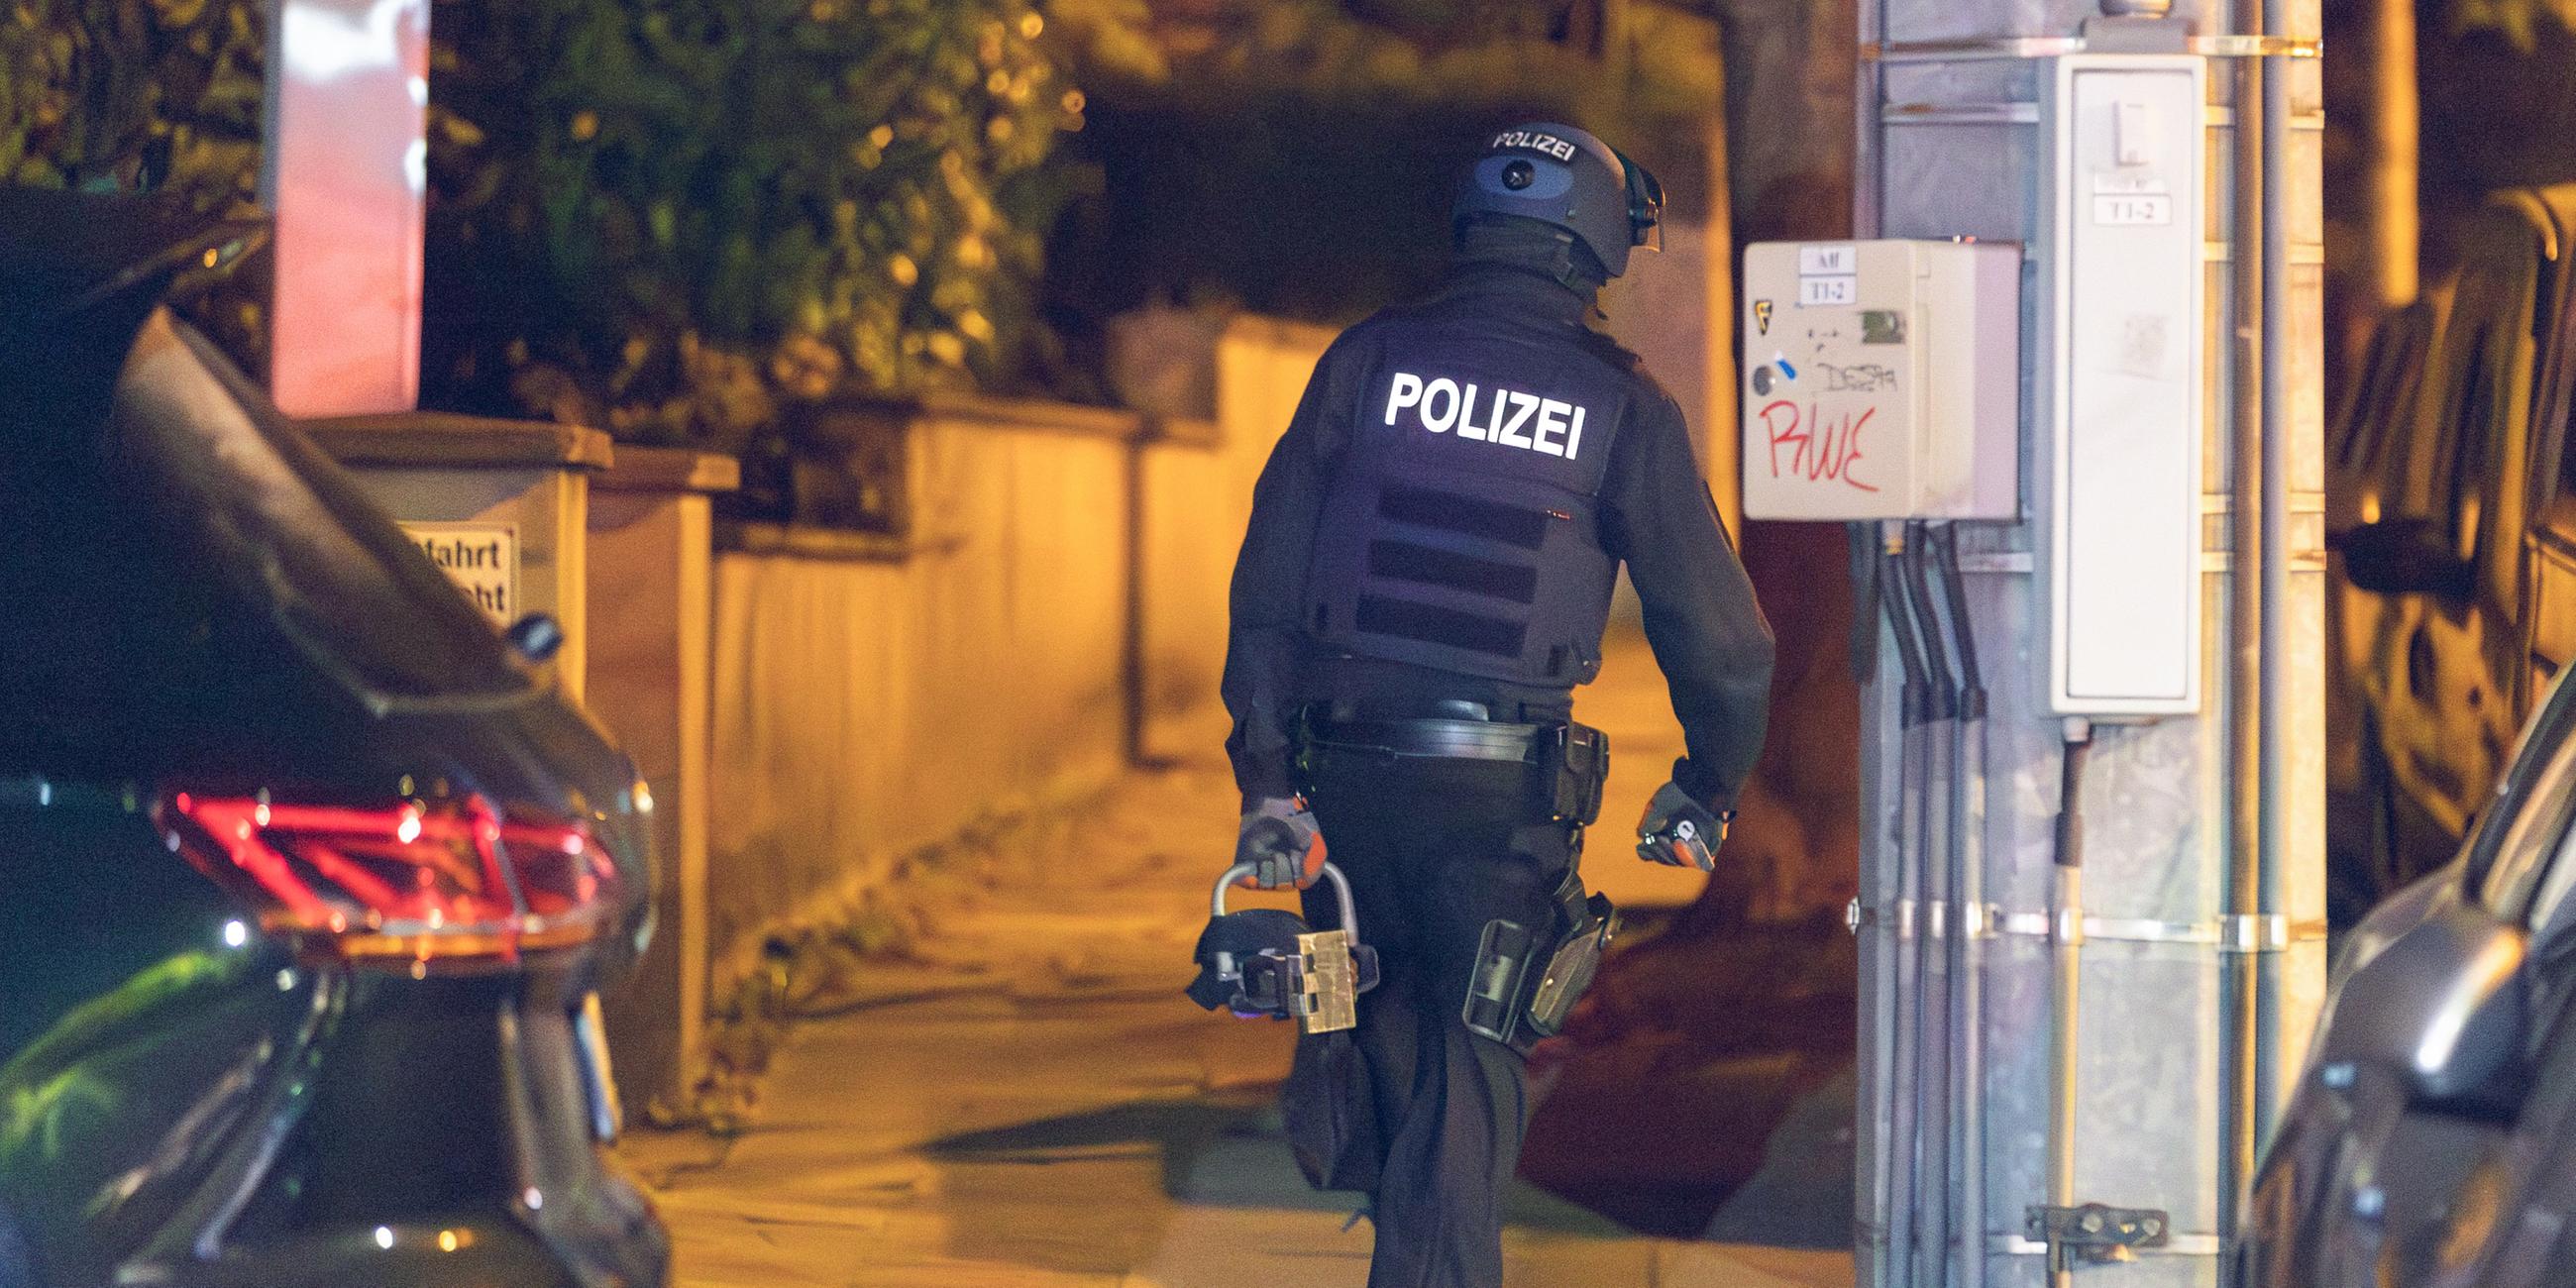  Ein Polizist trägt beim Einsatz einen hydraulischen Türöffner. 